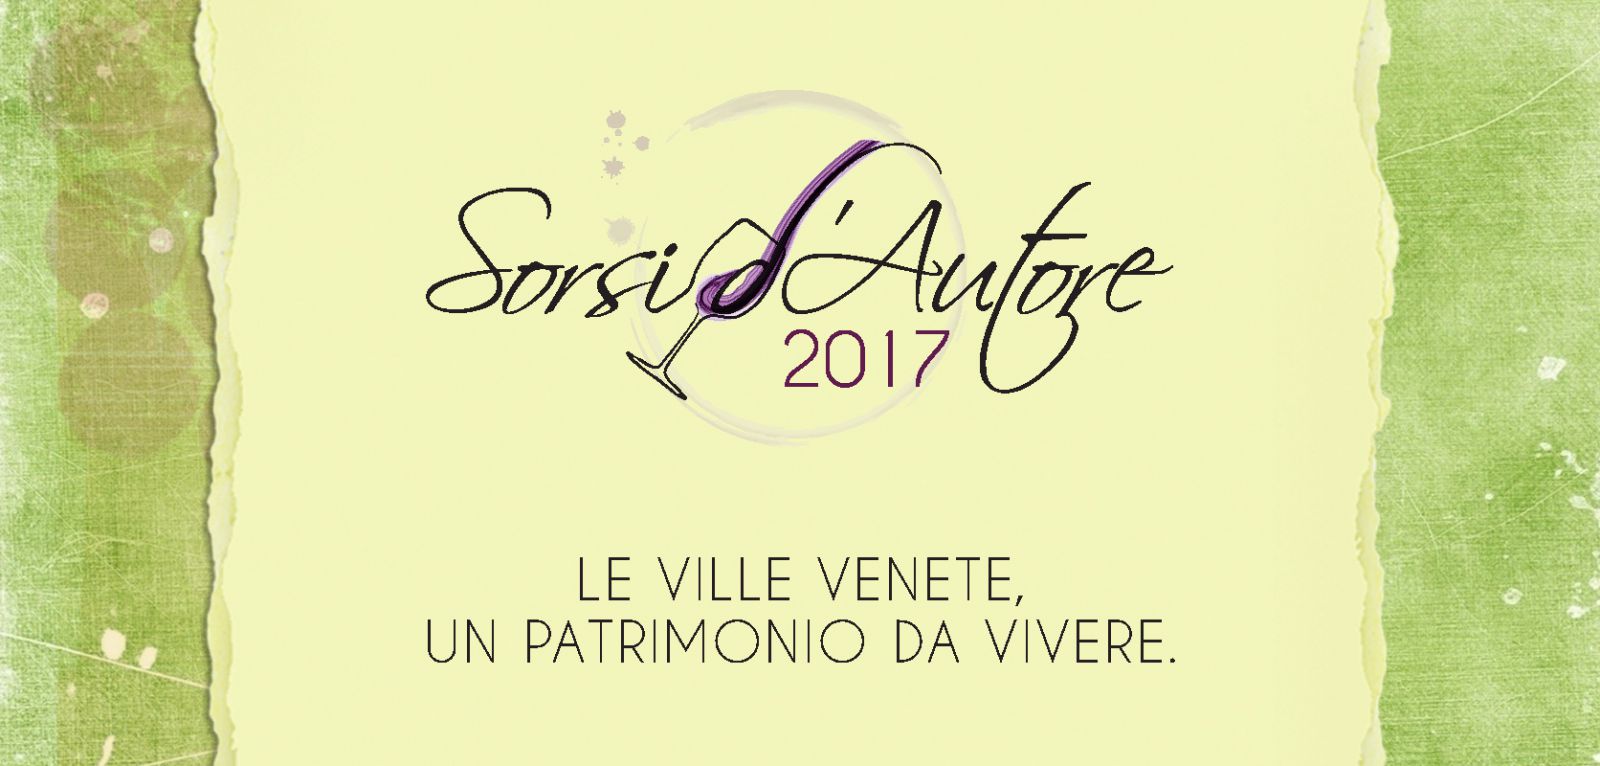 SORSI D'AUTORE XVIII EDIZIONE 2017